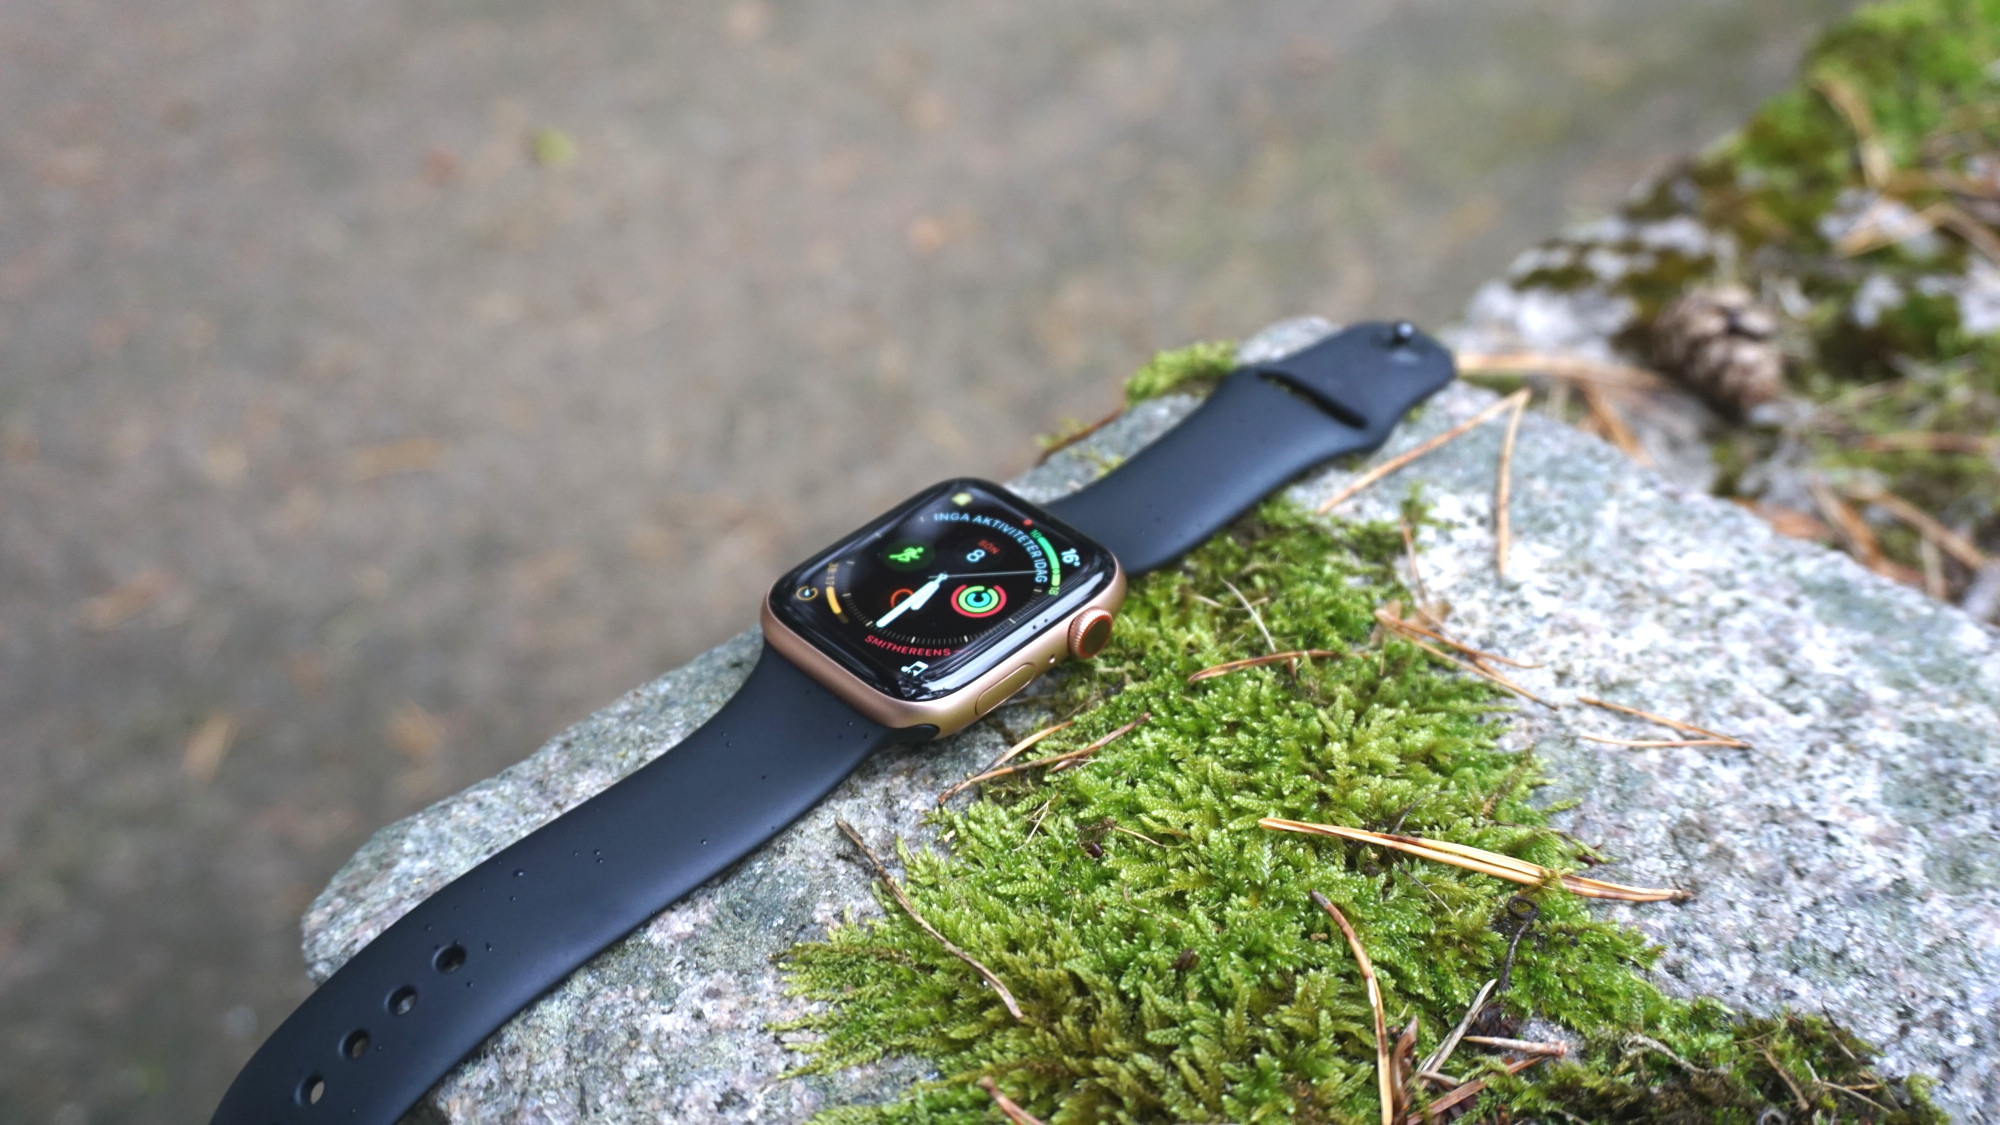 Test: Apple Watch 4 – smartast i klassen